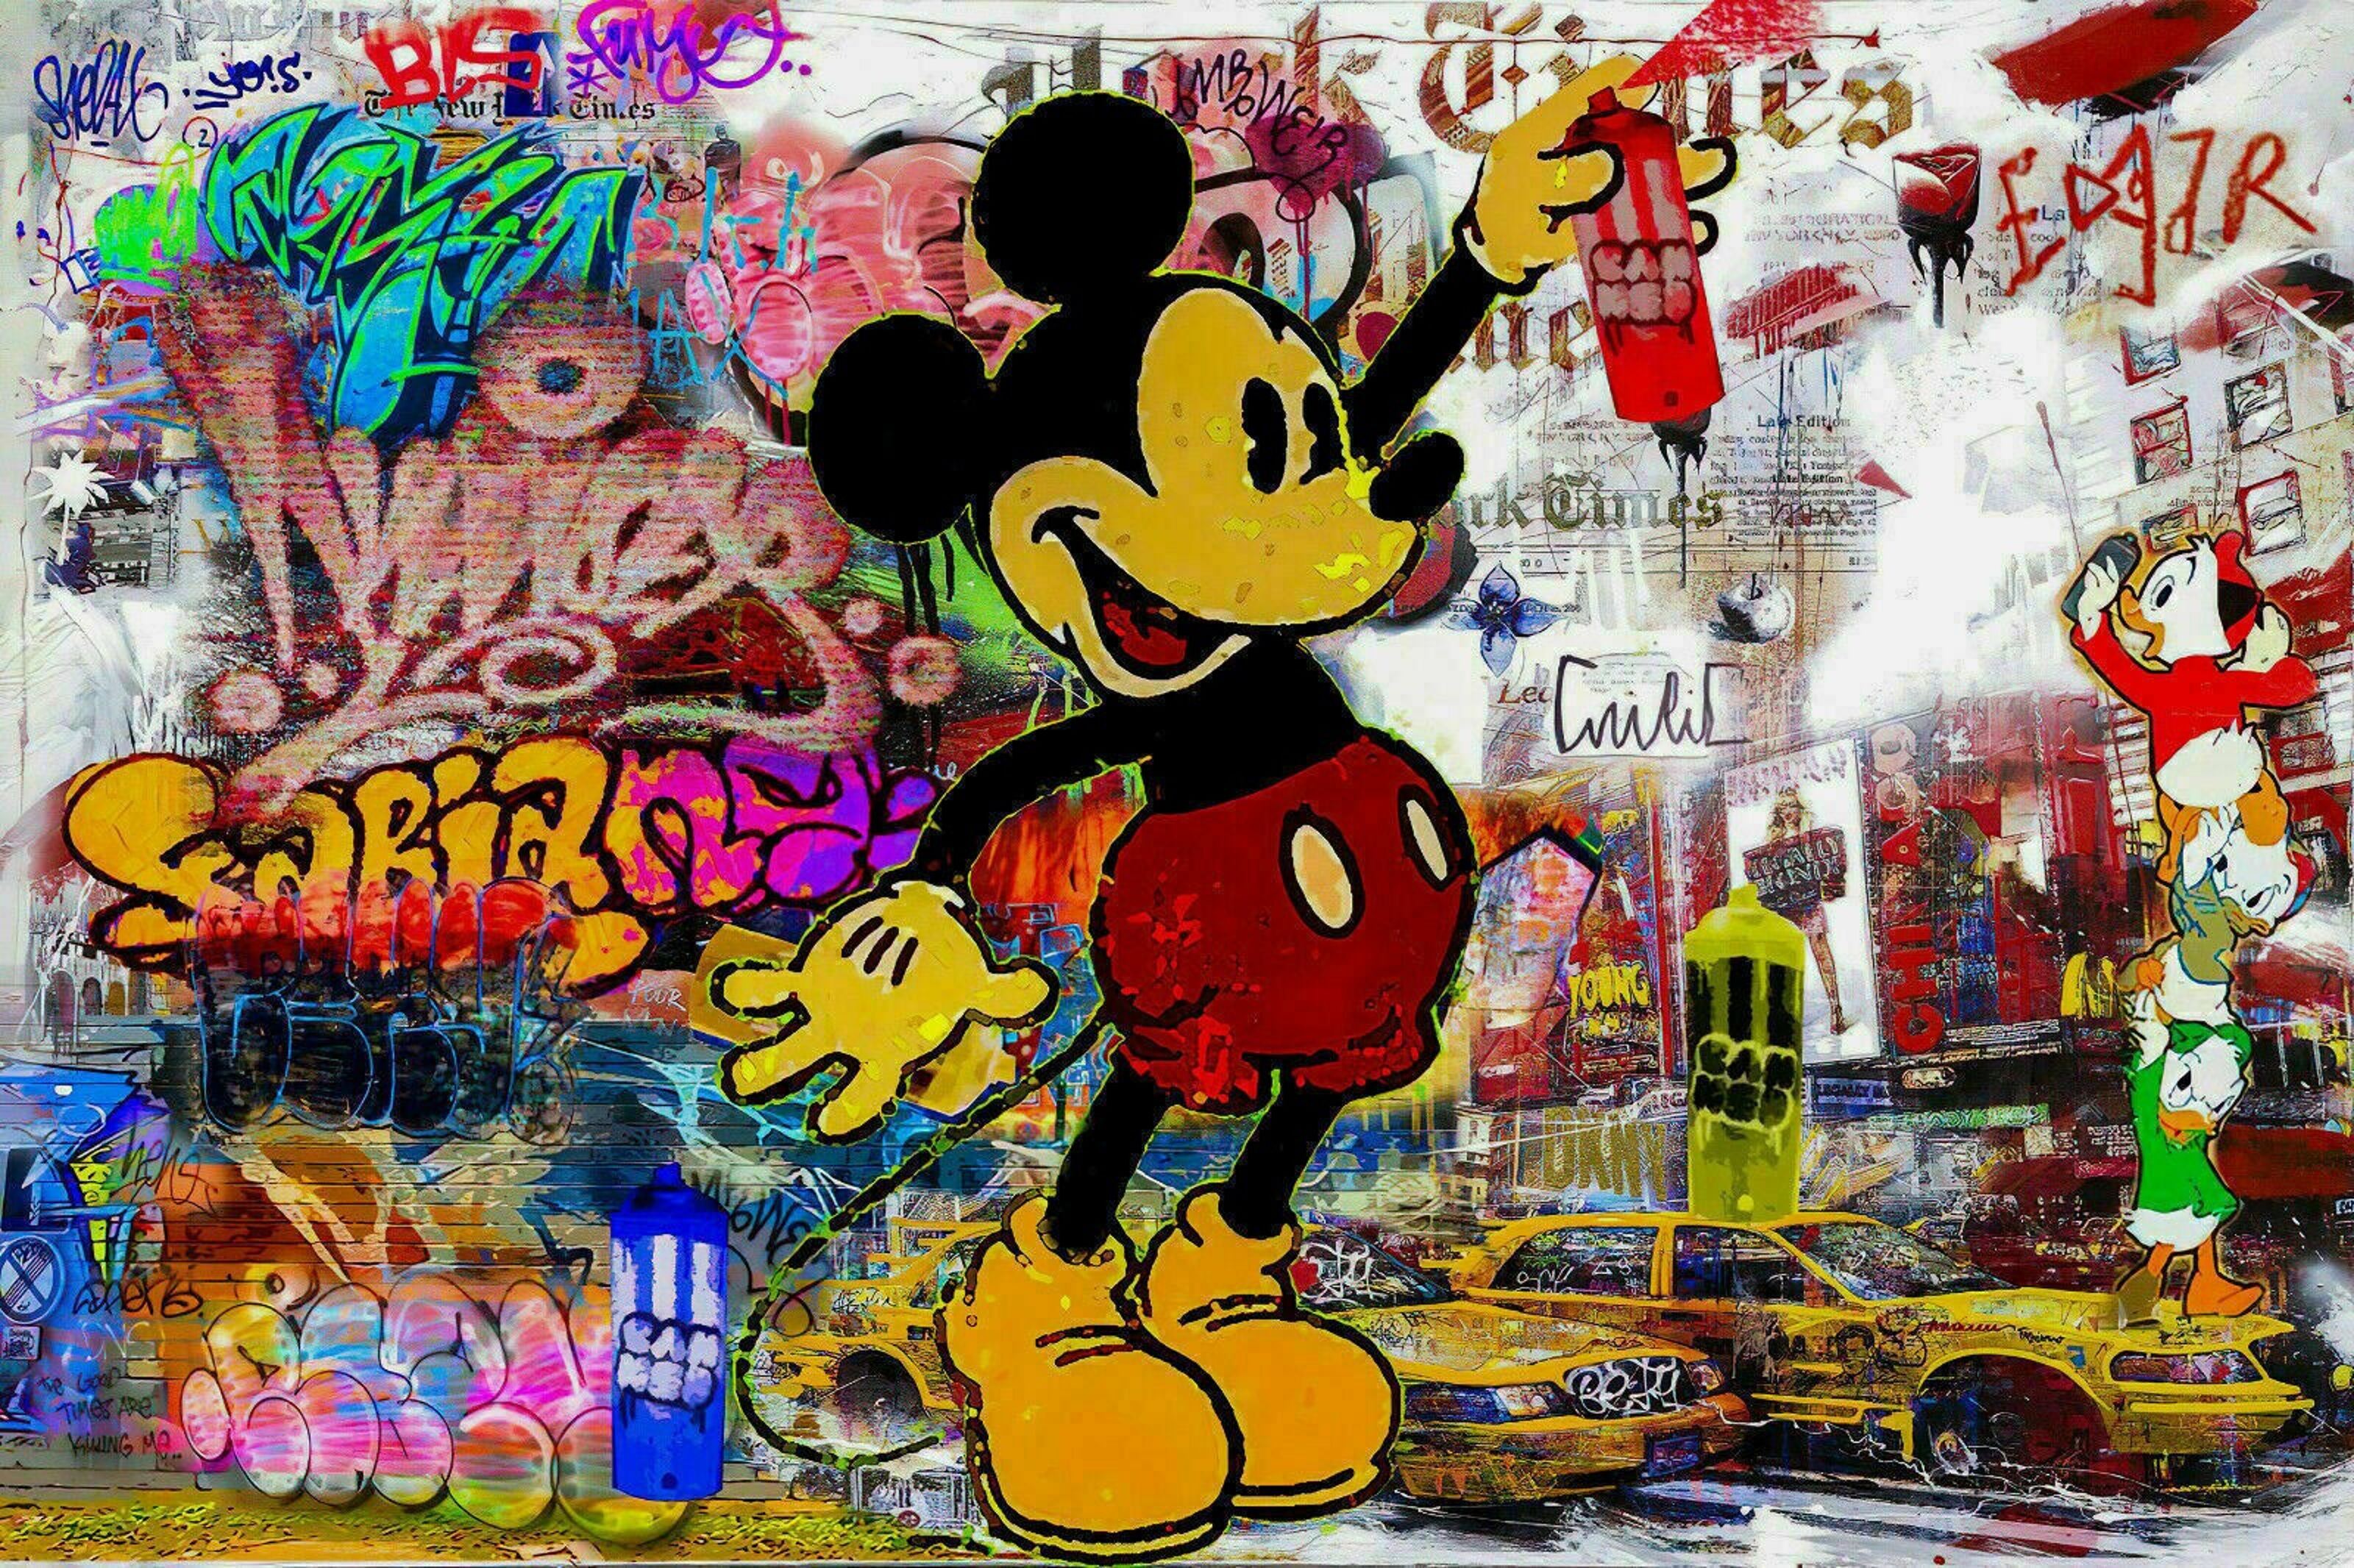 Leinwand Bilder Minnie Maus Tasche Pop Art Wandbilder